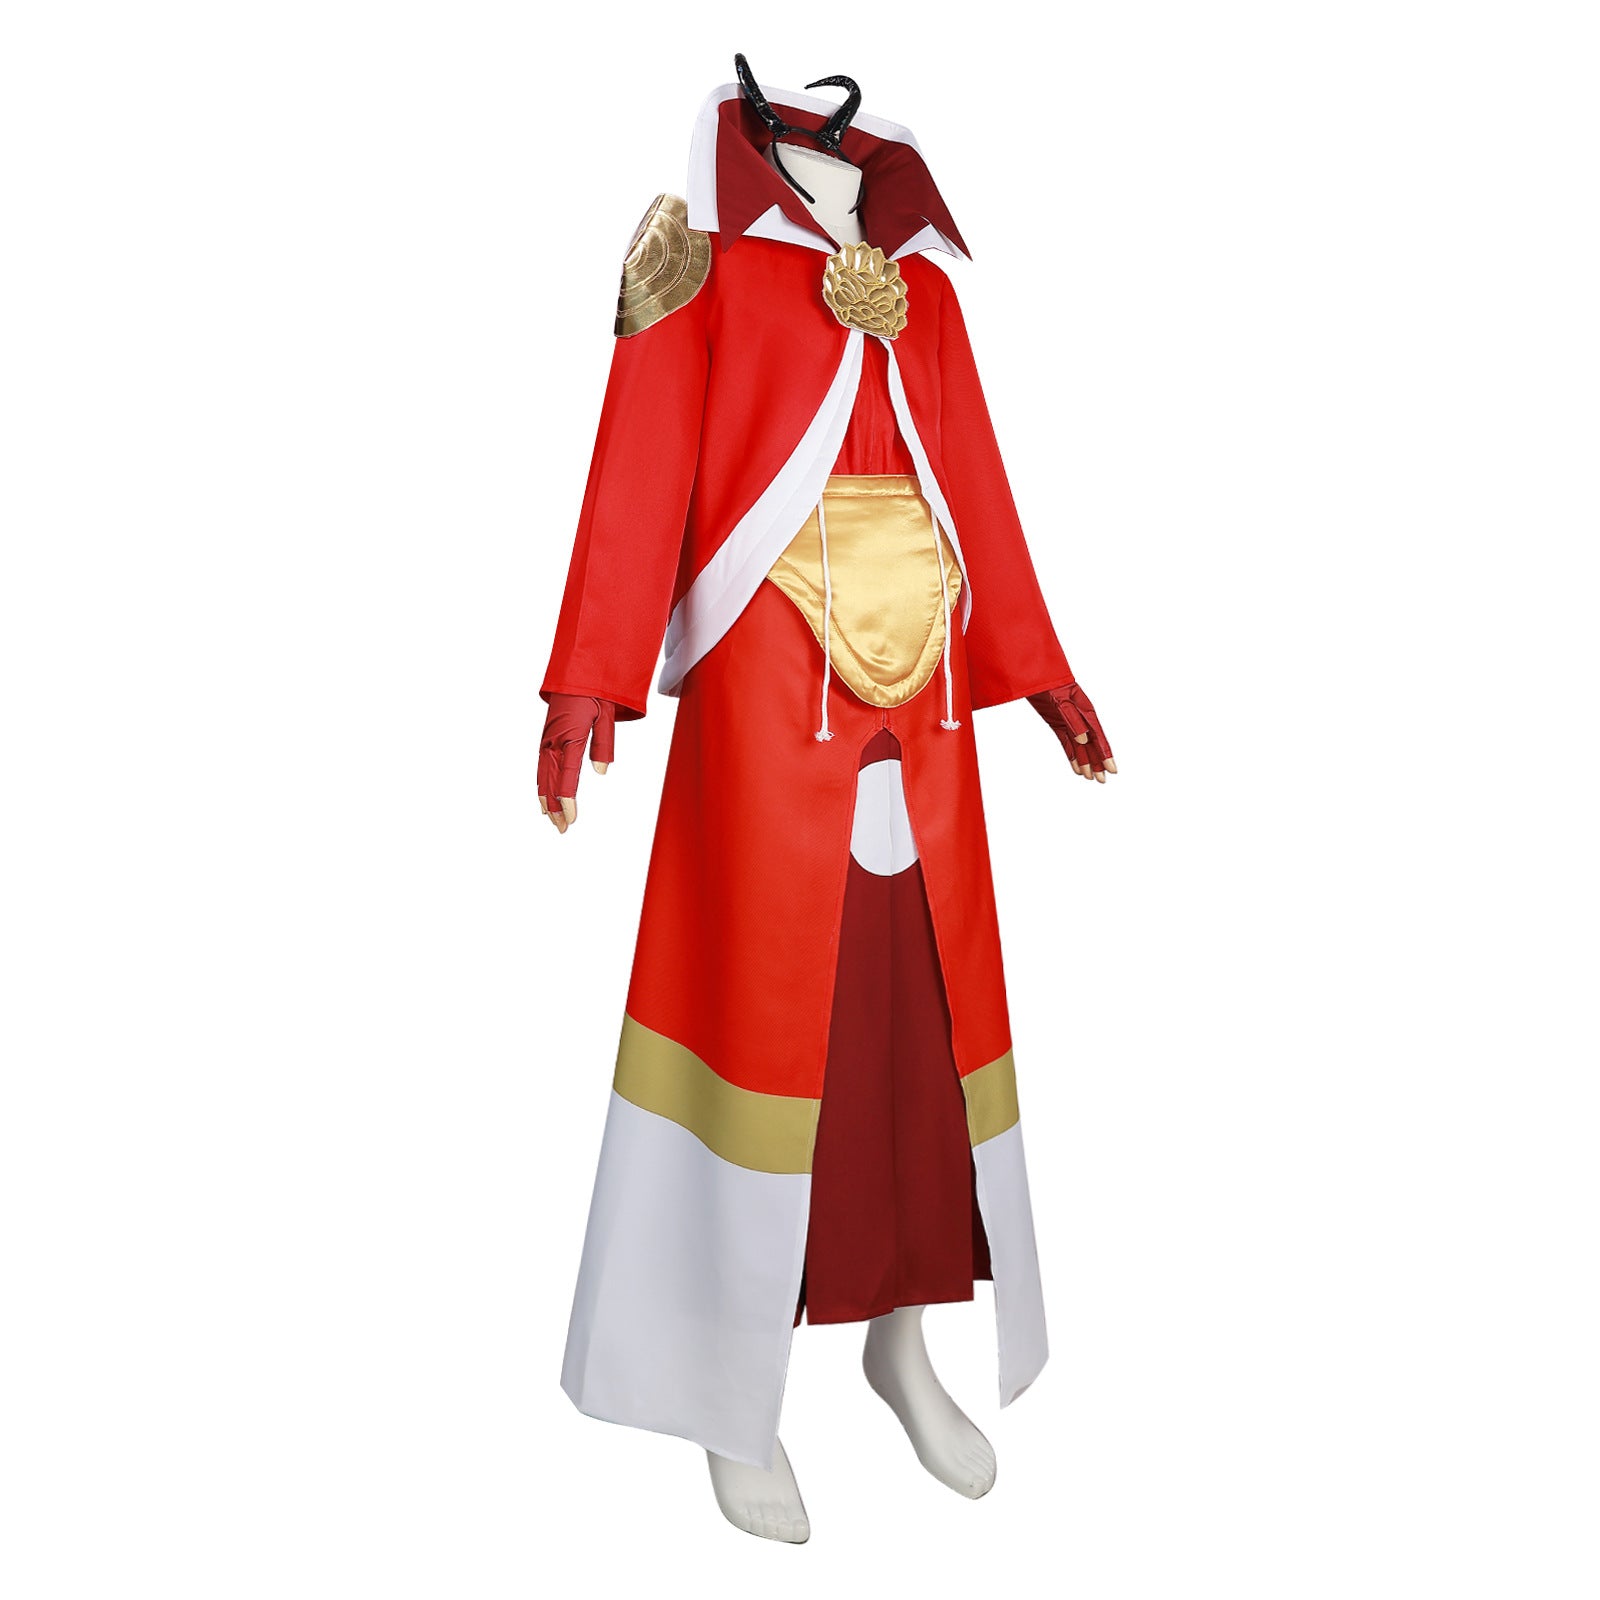 Benimaru Kimono That Time I Got Reincarnated as a Slime Meine Wiedergeburt als Schleim in einer anderen Welt Cosplay Kostüm